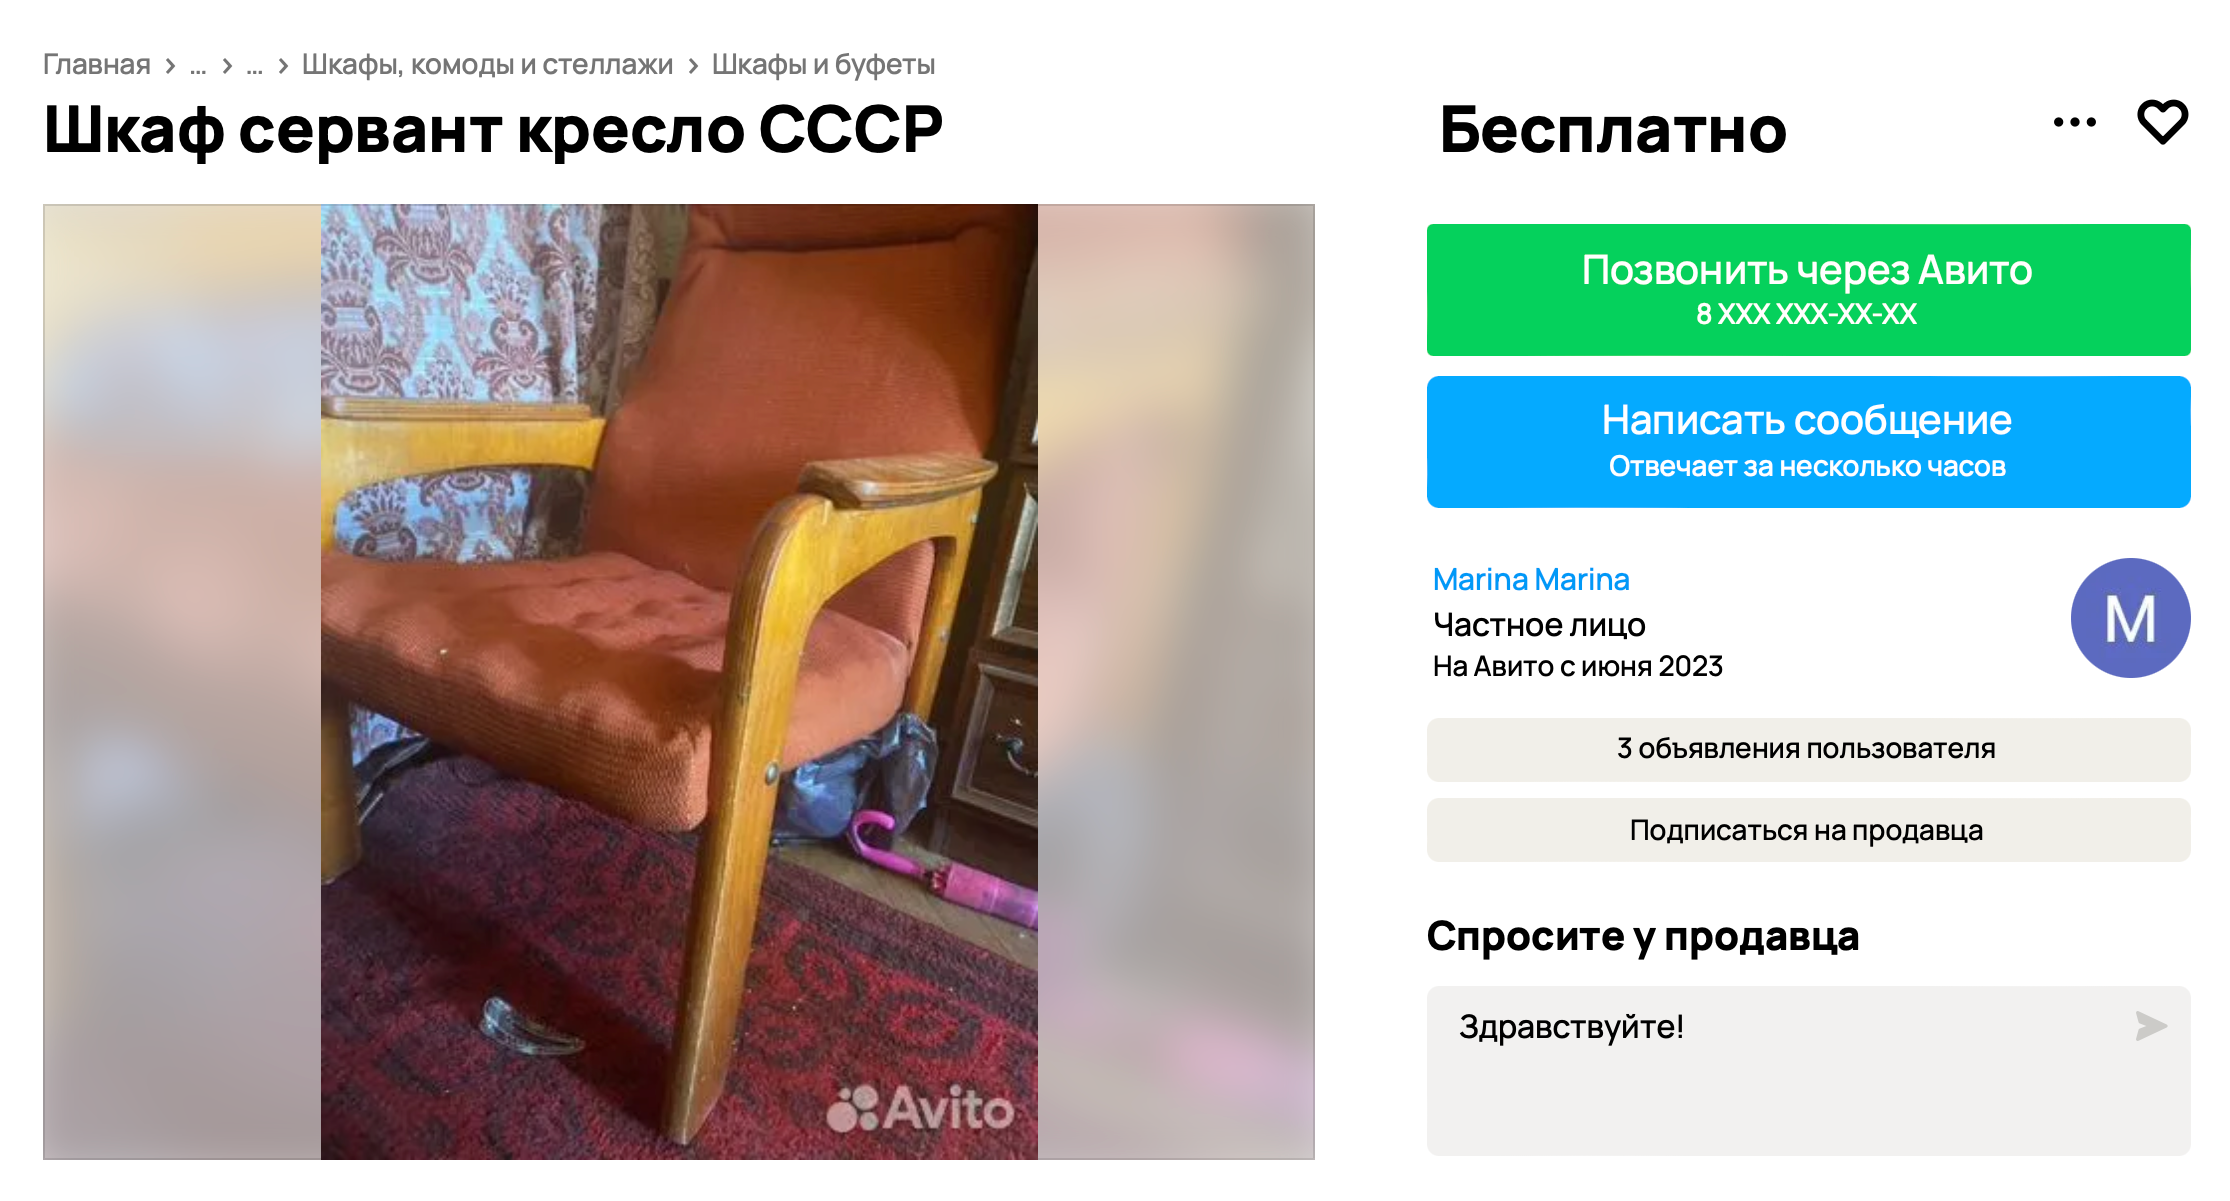 Кресла часто отдают в комплекте со столами, стенками и другой мебелью. Но такой вариант придется реставрировать полностью. Источник: avito.ru